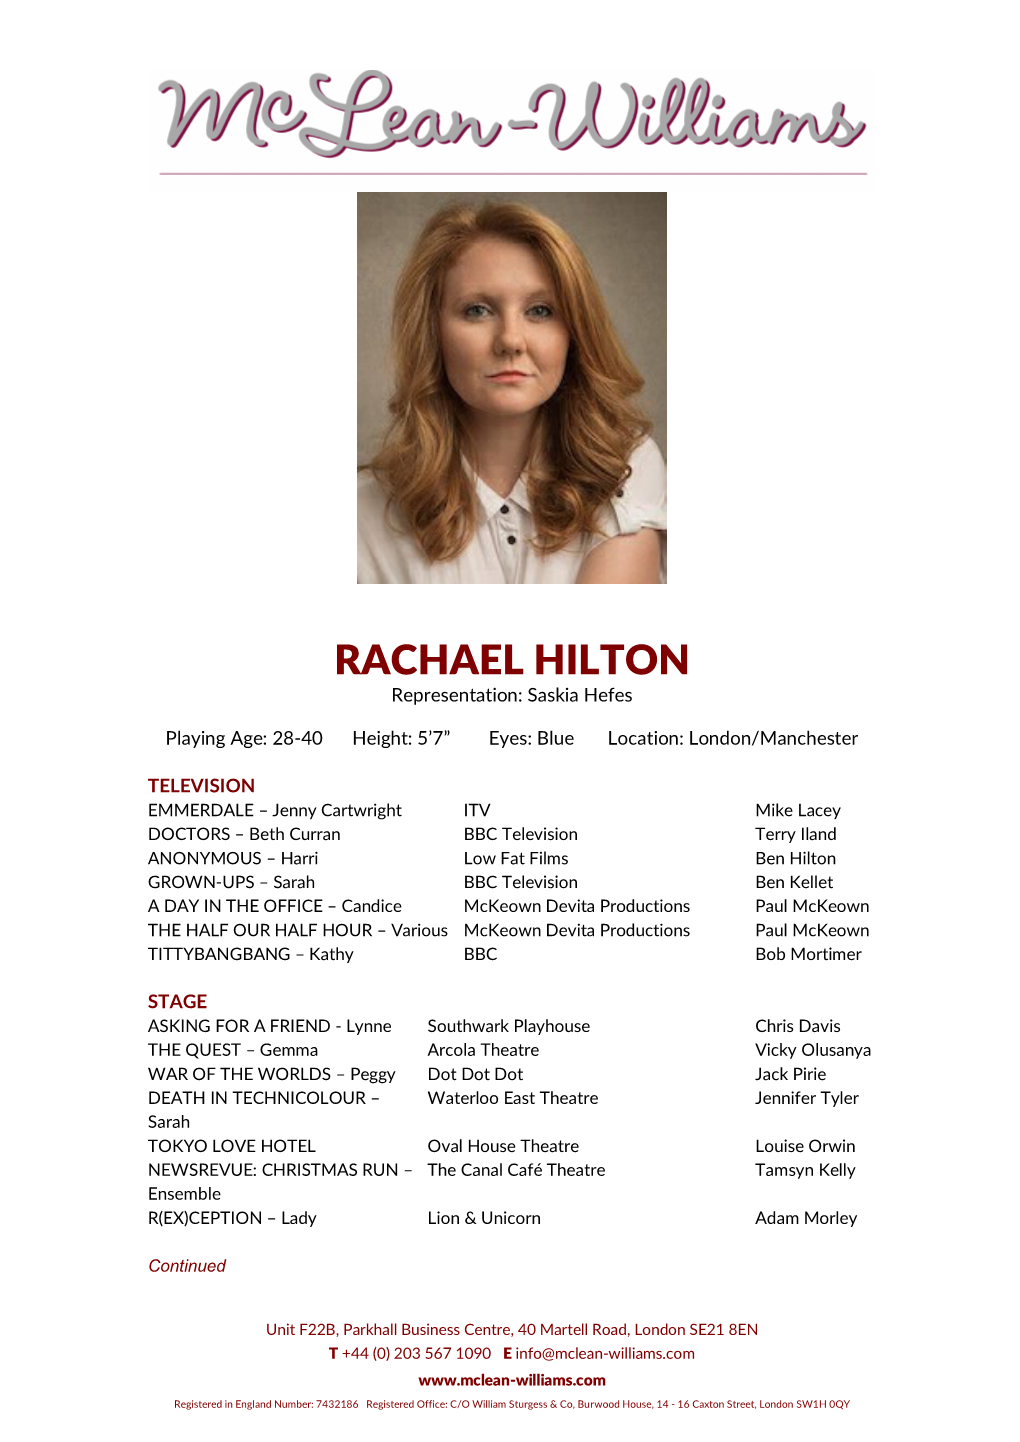 RACHAEL HILTON Representation: Saskia Hefes